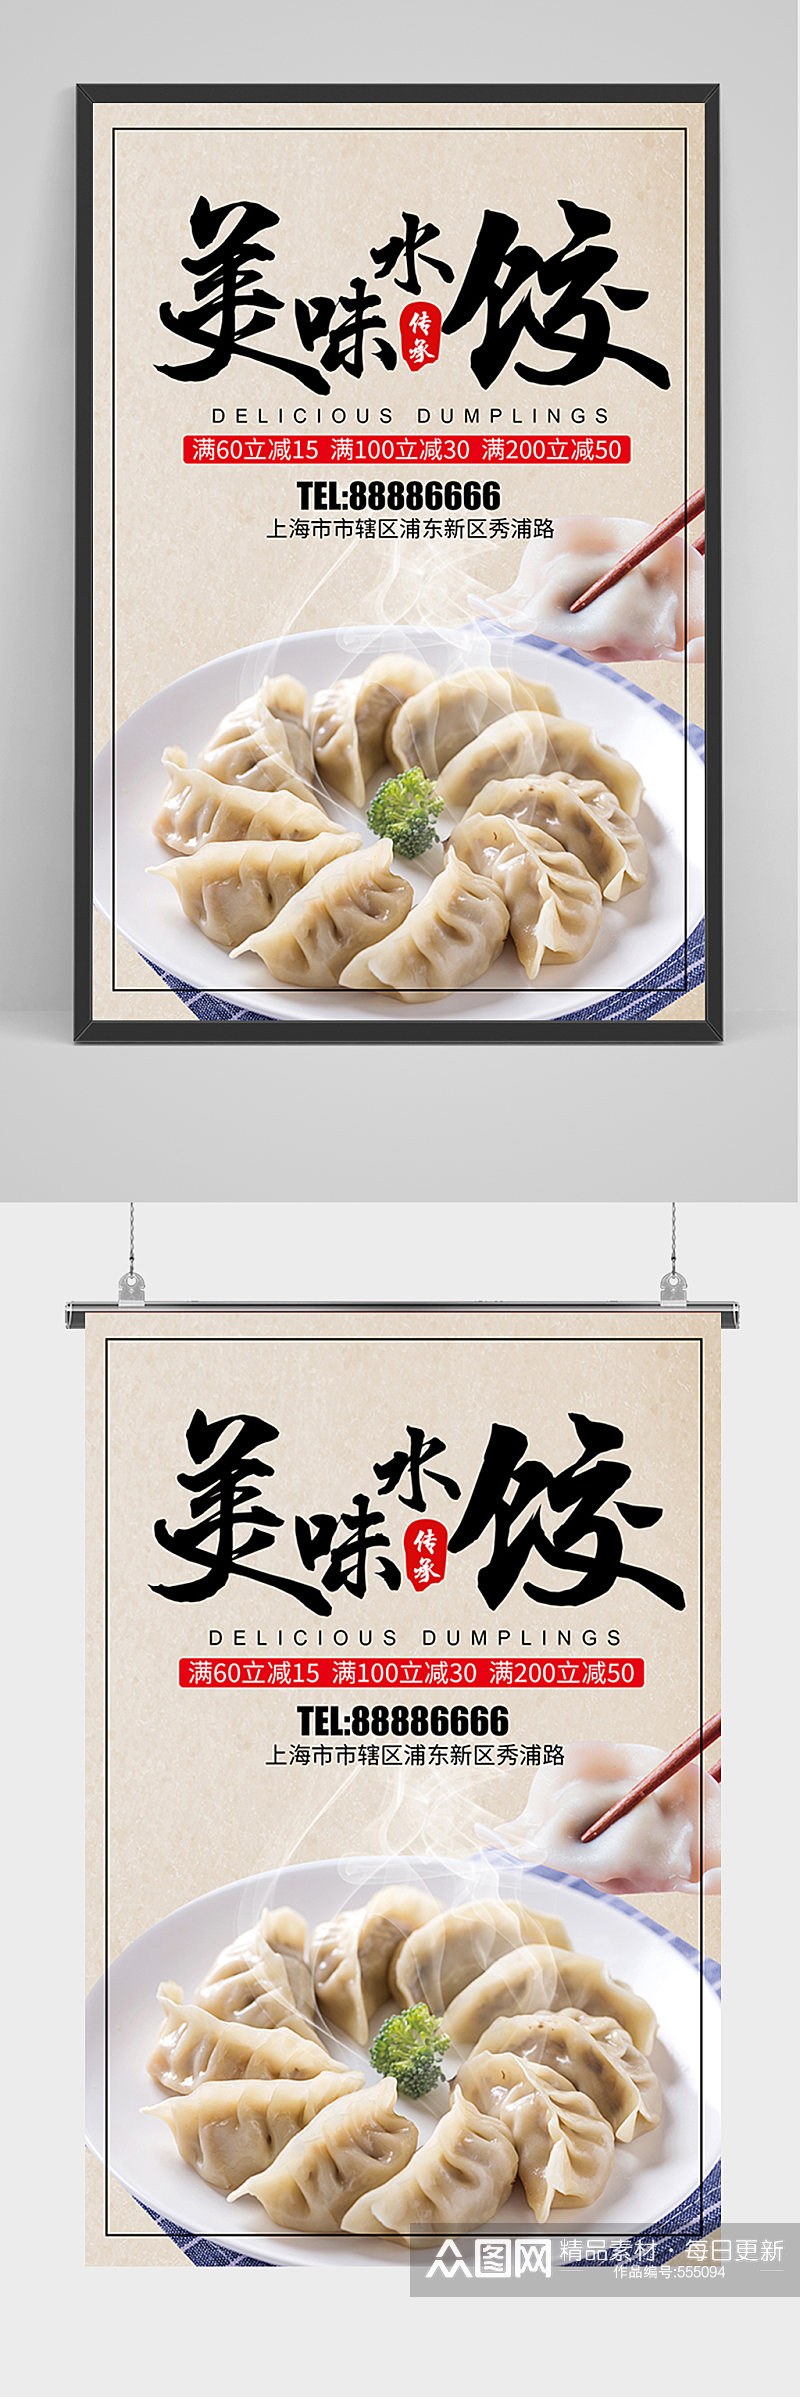 美味水饺宣传海报素材